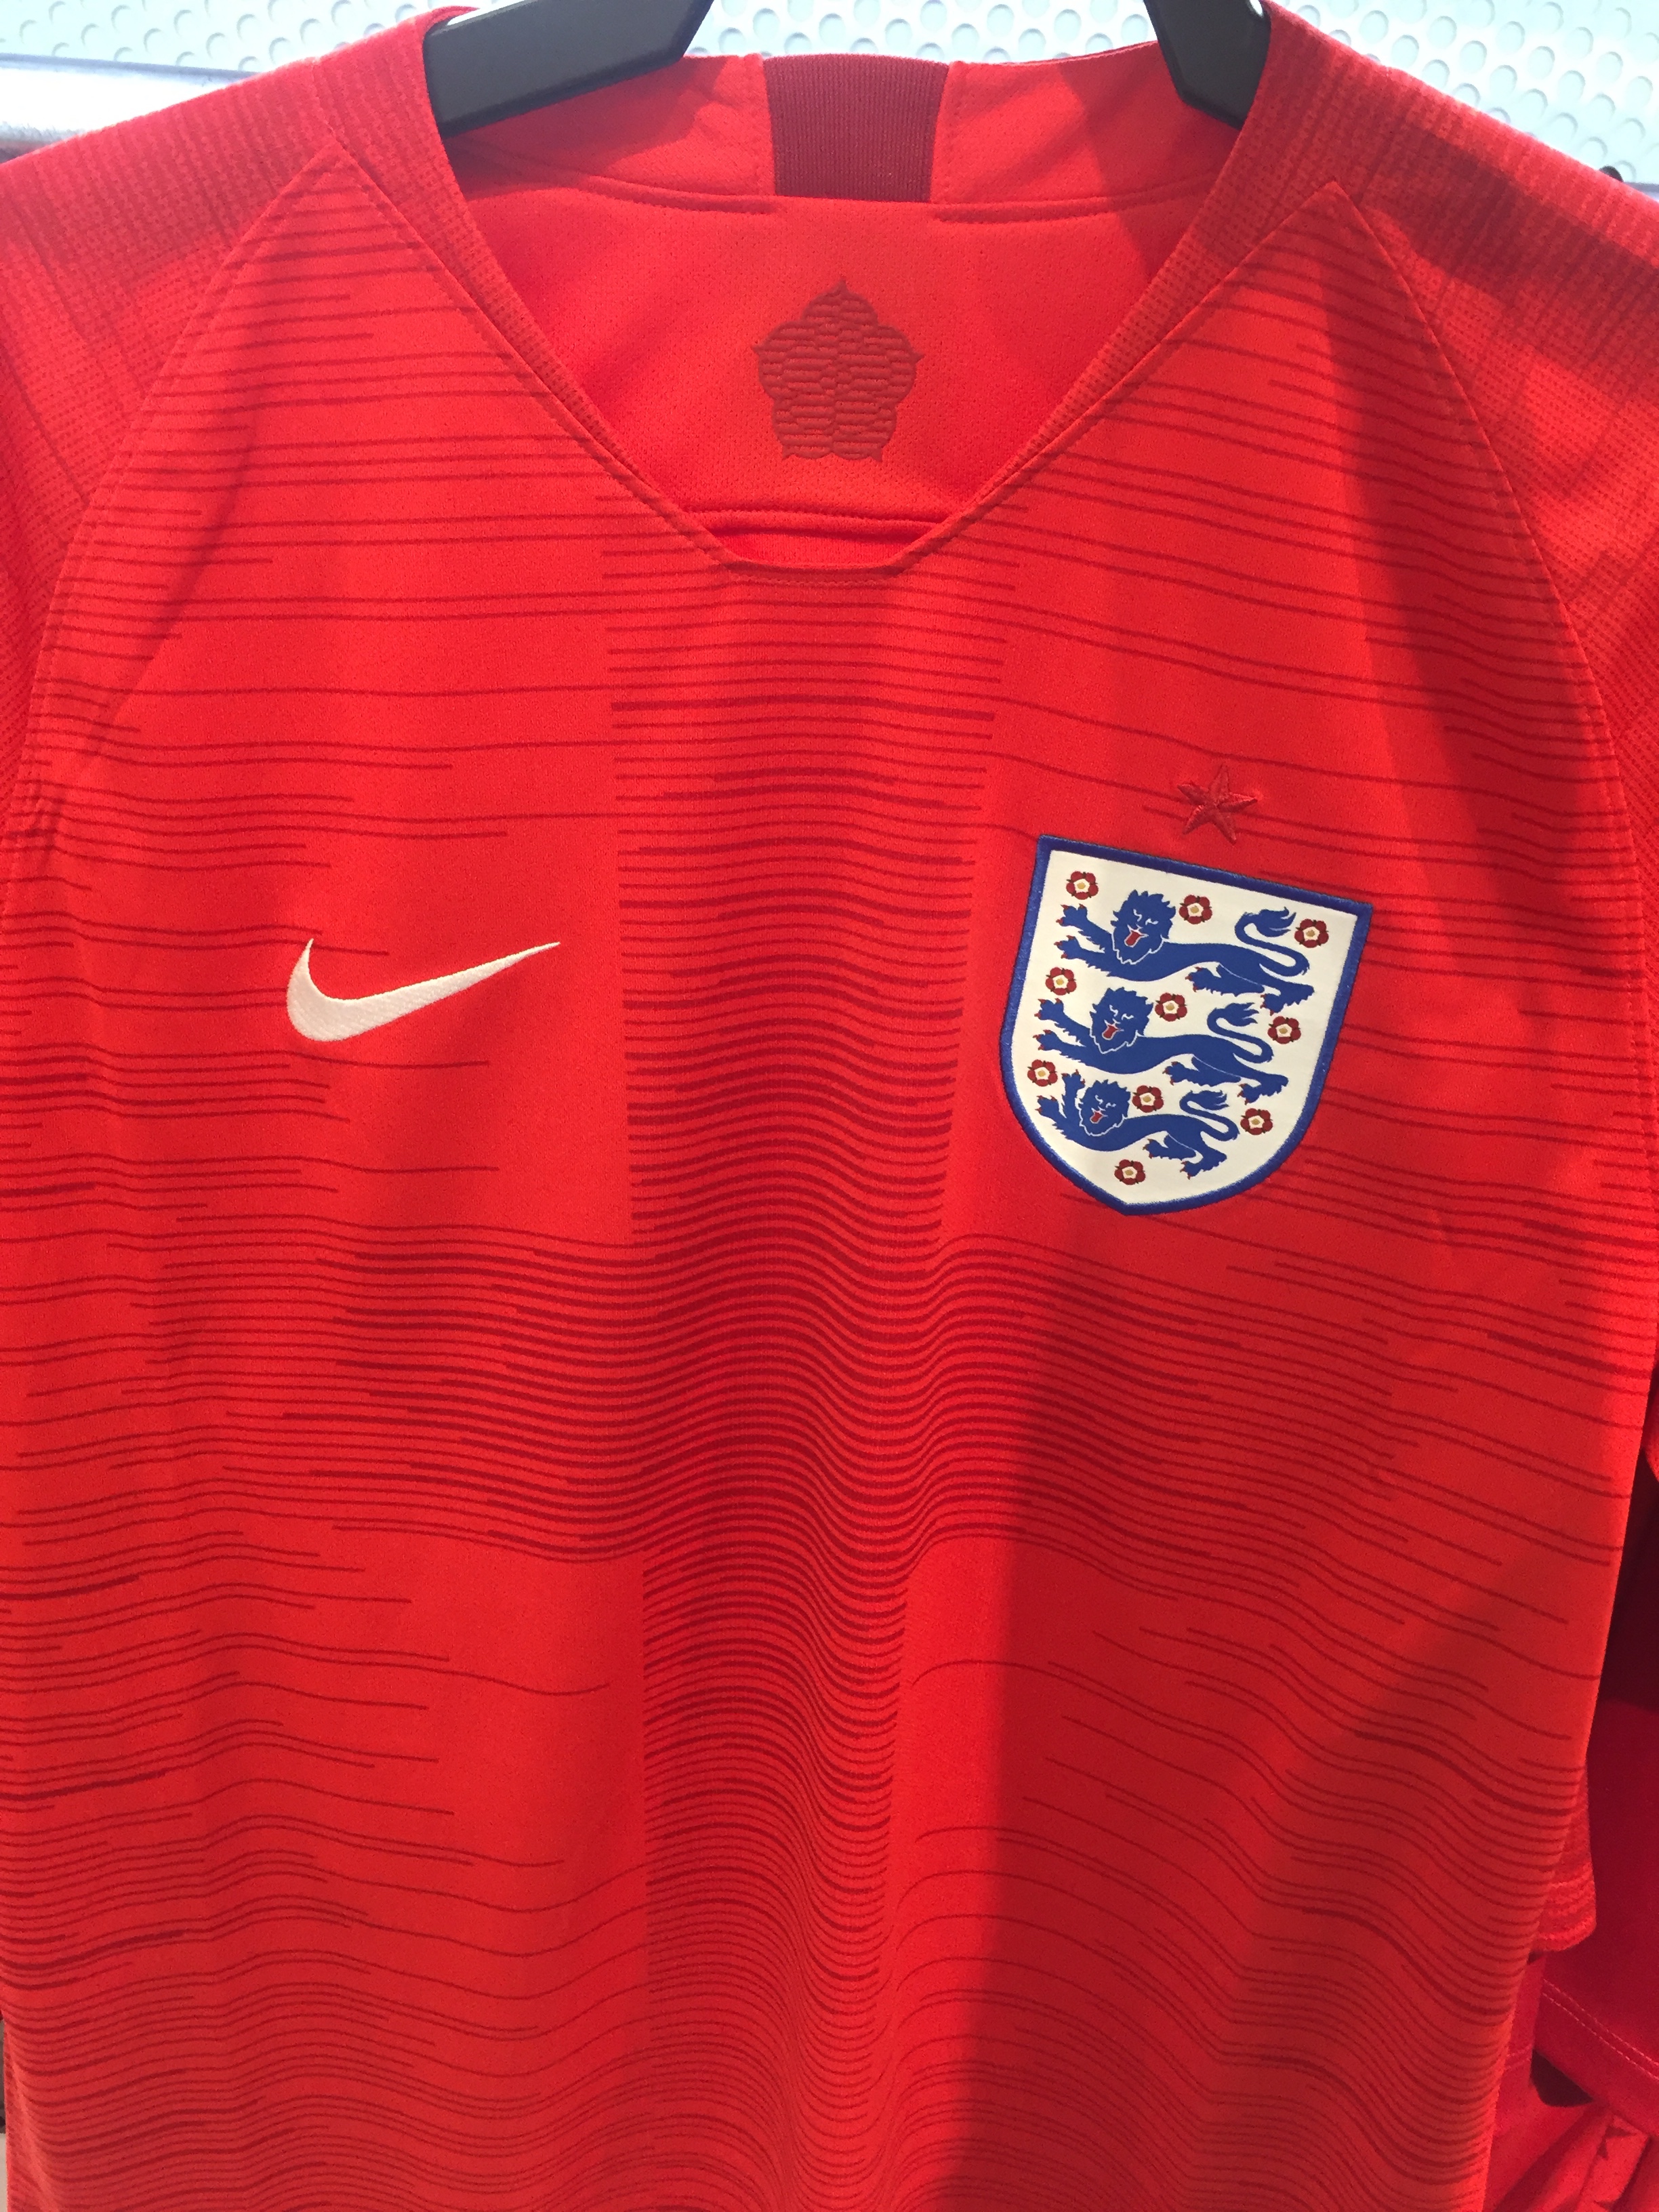 Nike Away Jerseys: 2018 England Away 